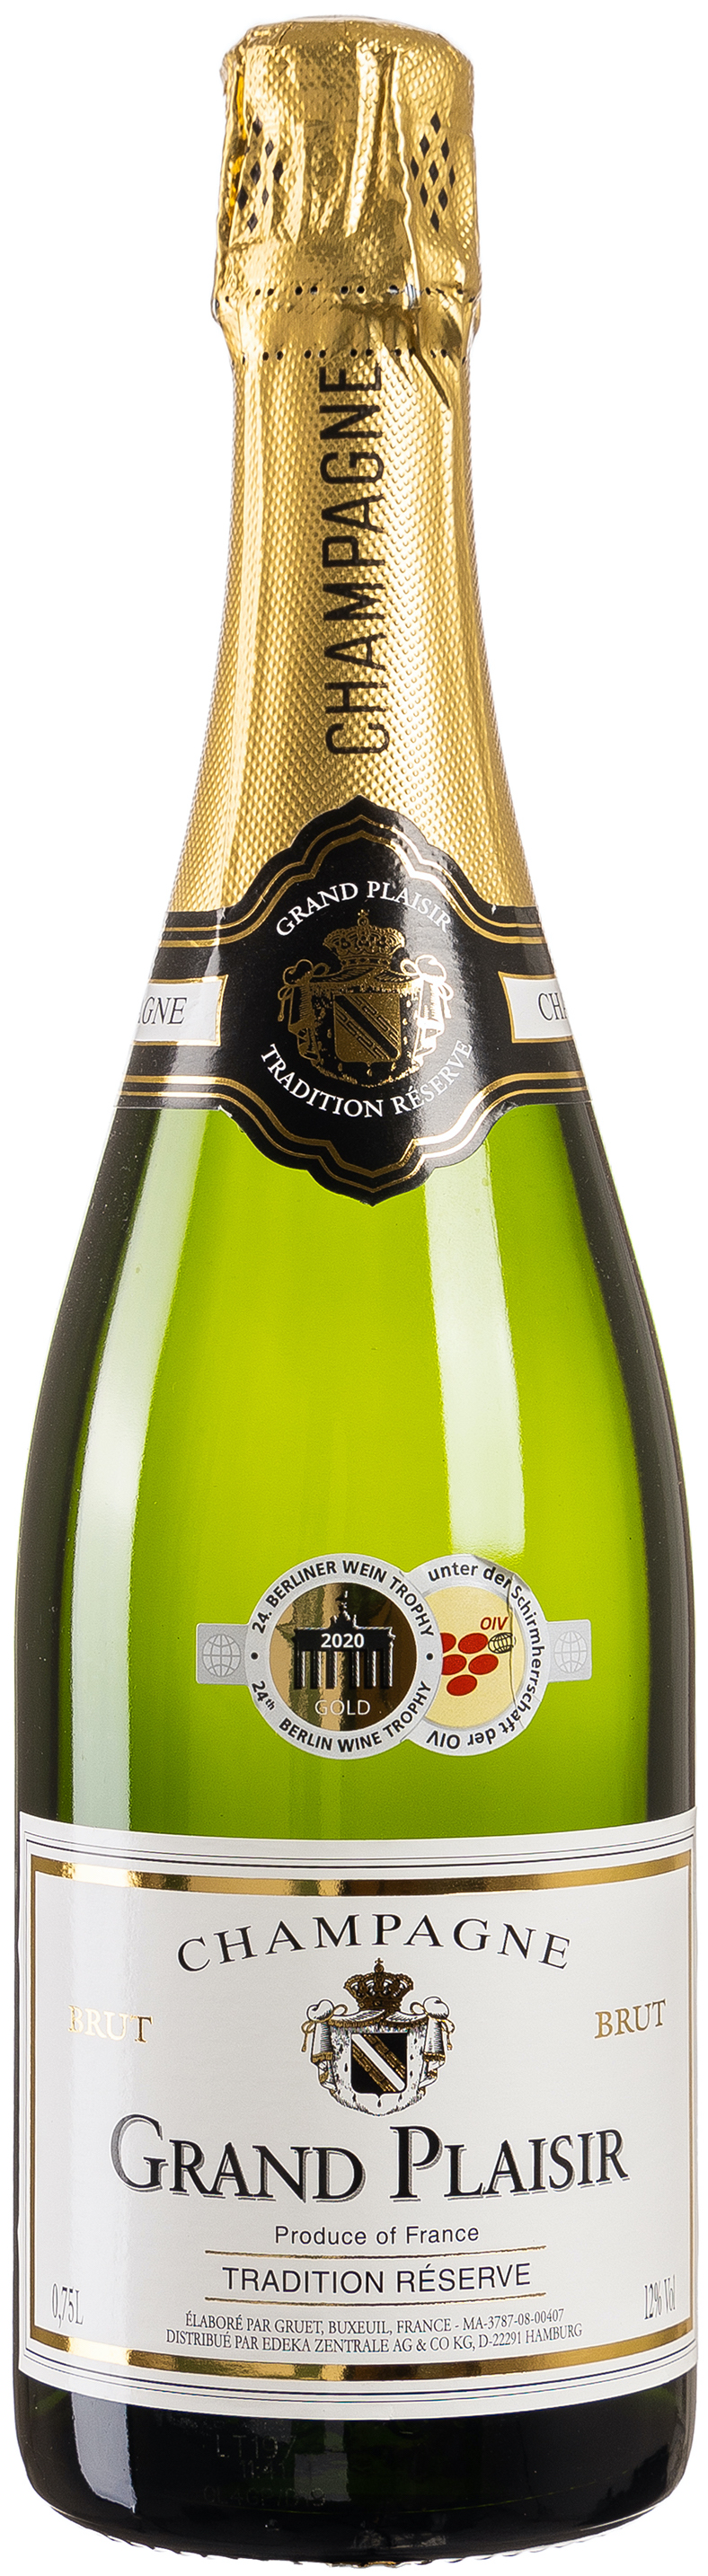 Grand Plaisir Champagne 12% vol. 0,75L